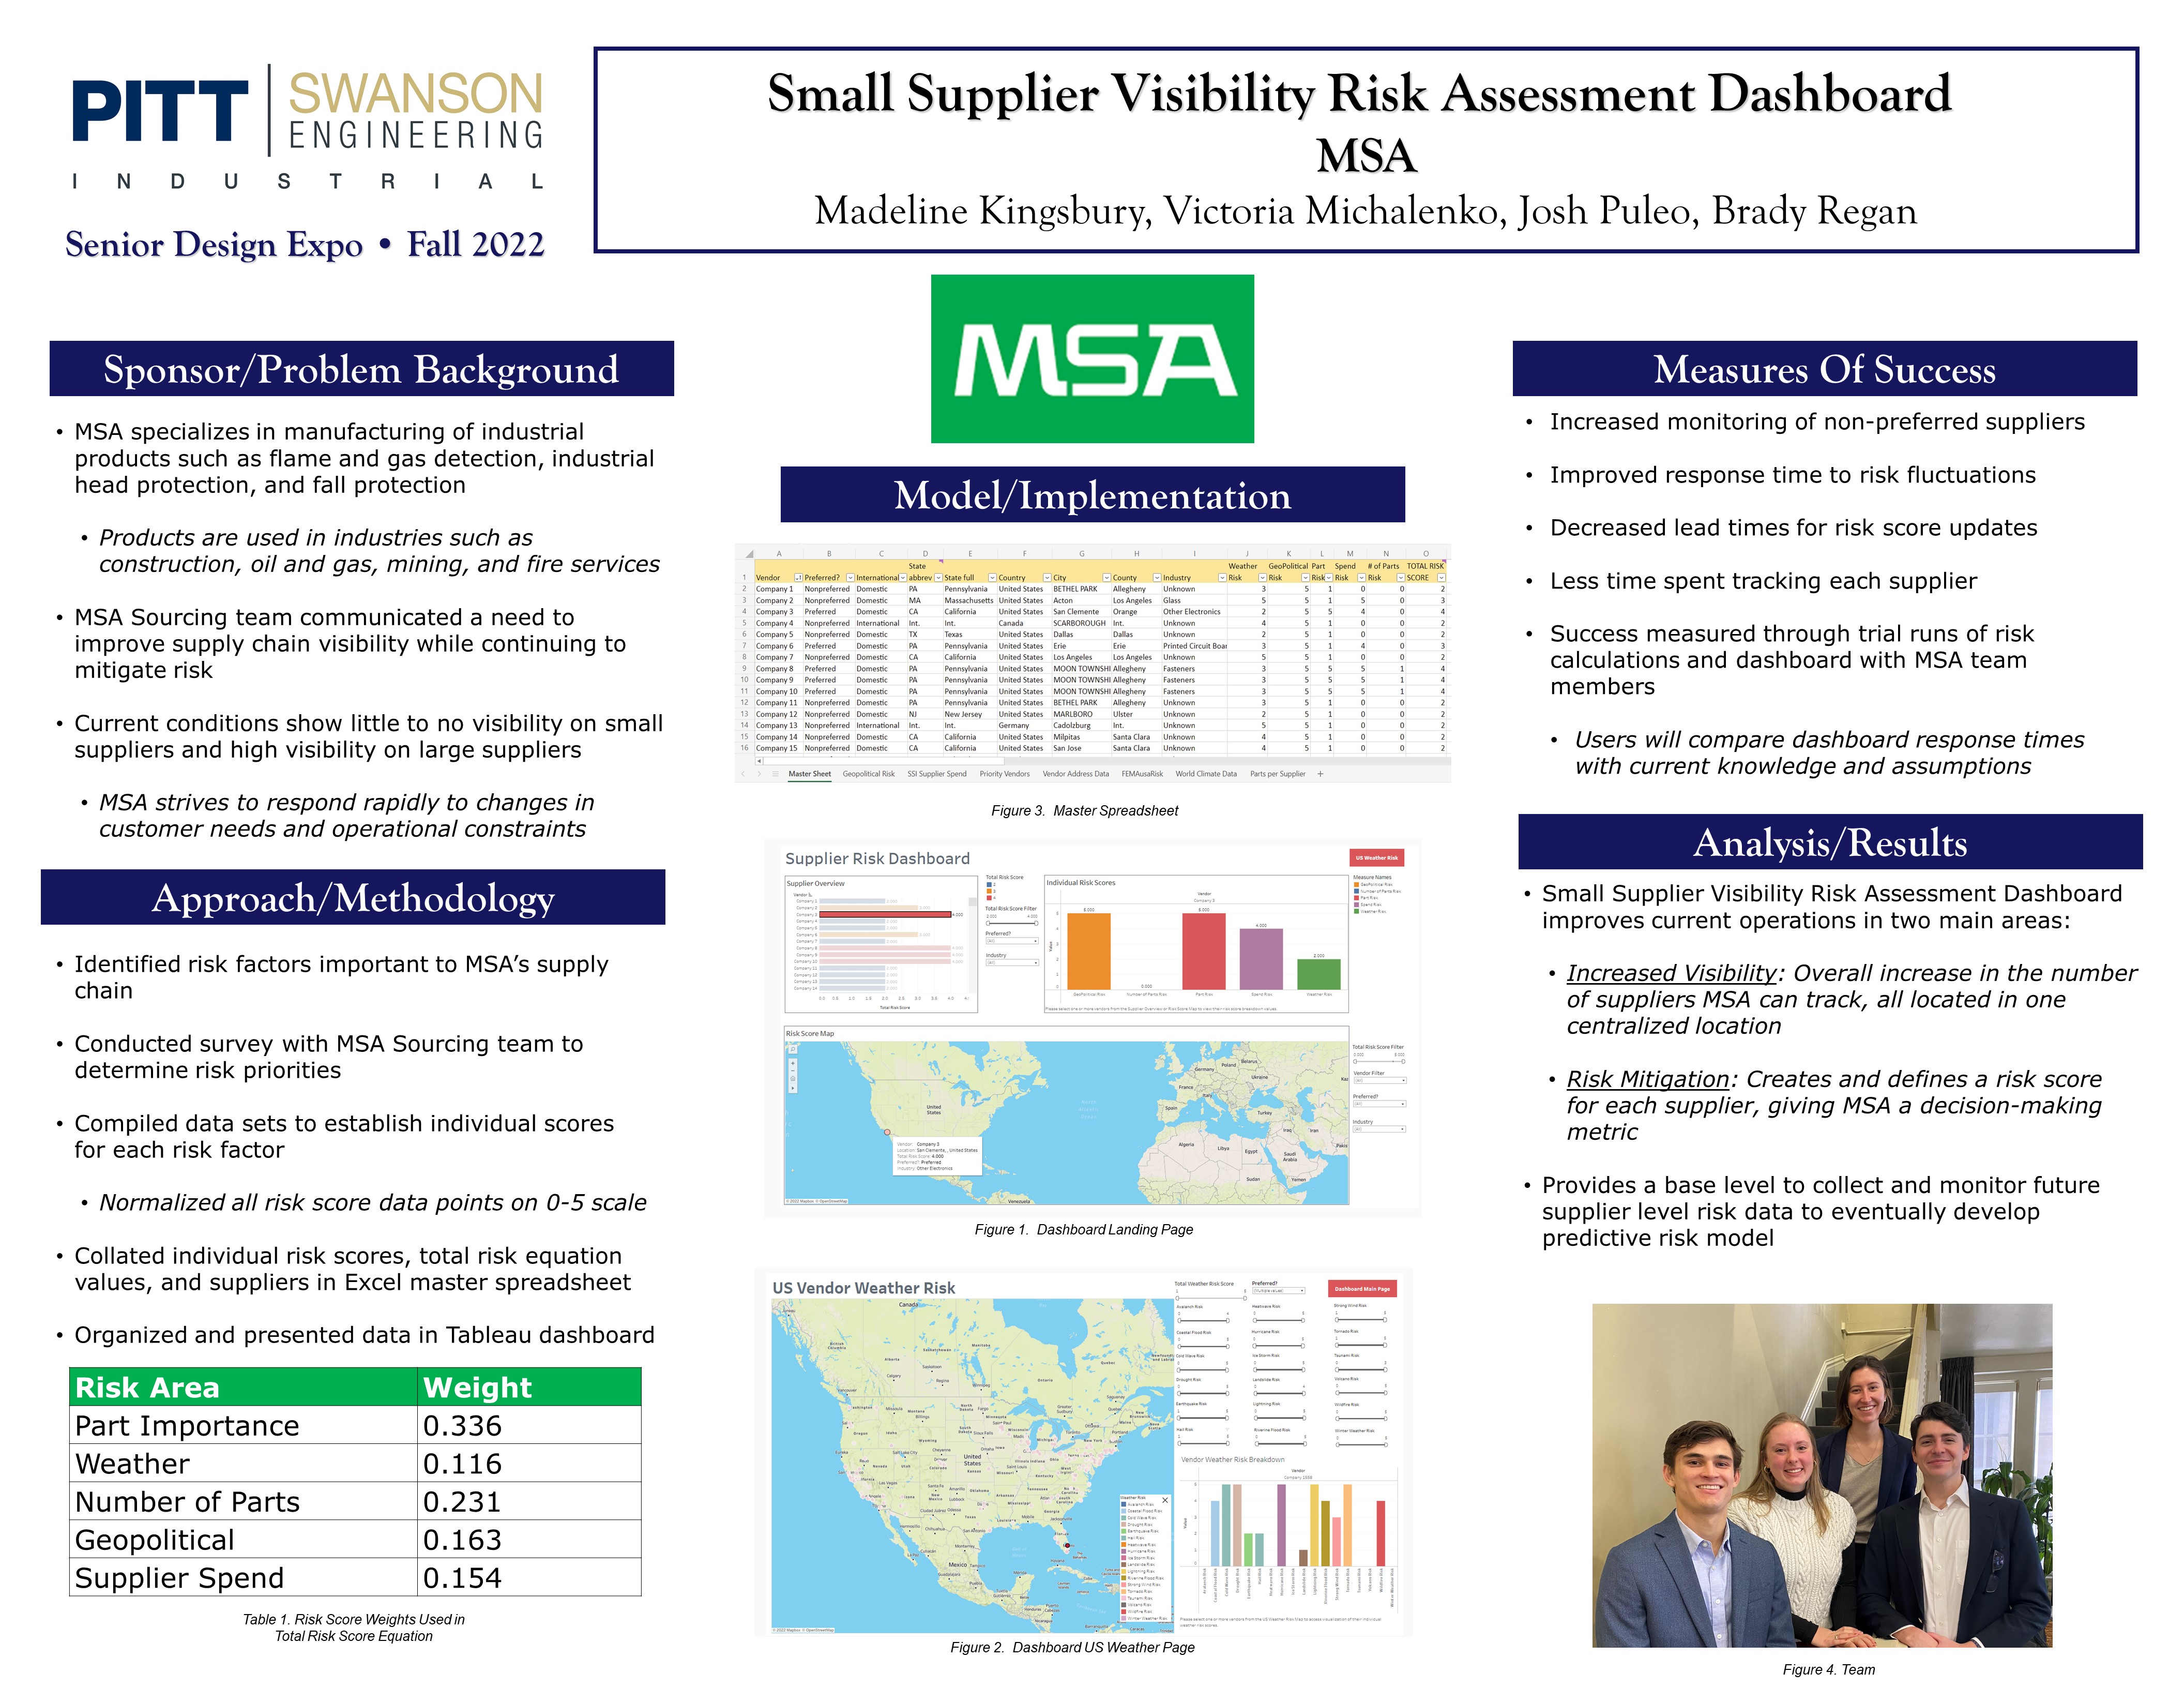 Small Supplier Visibility Risk Assessment Dashboard  research poster